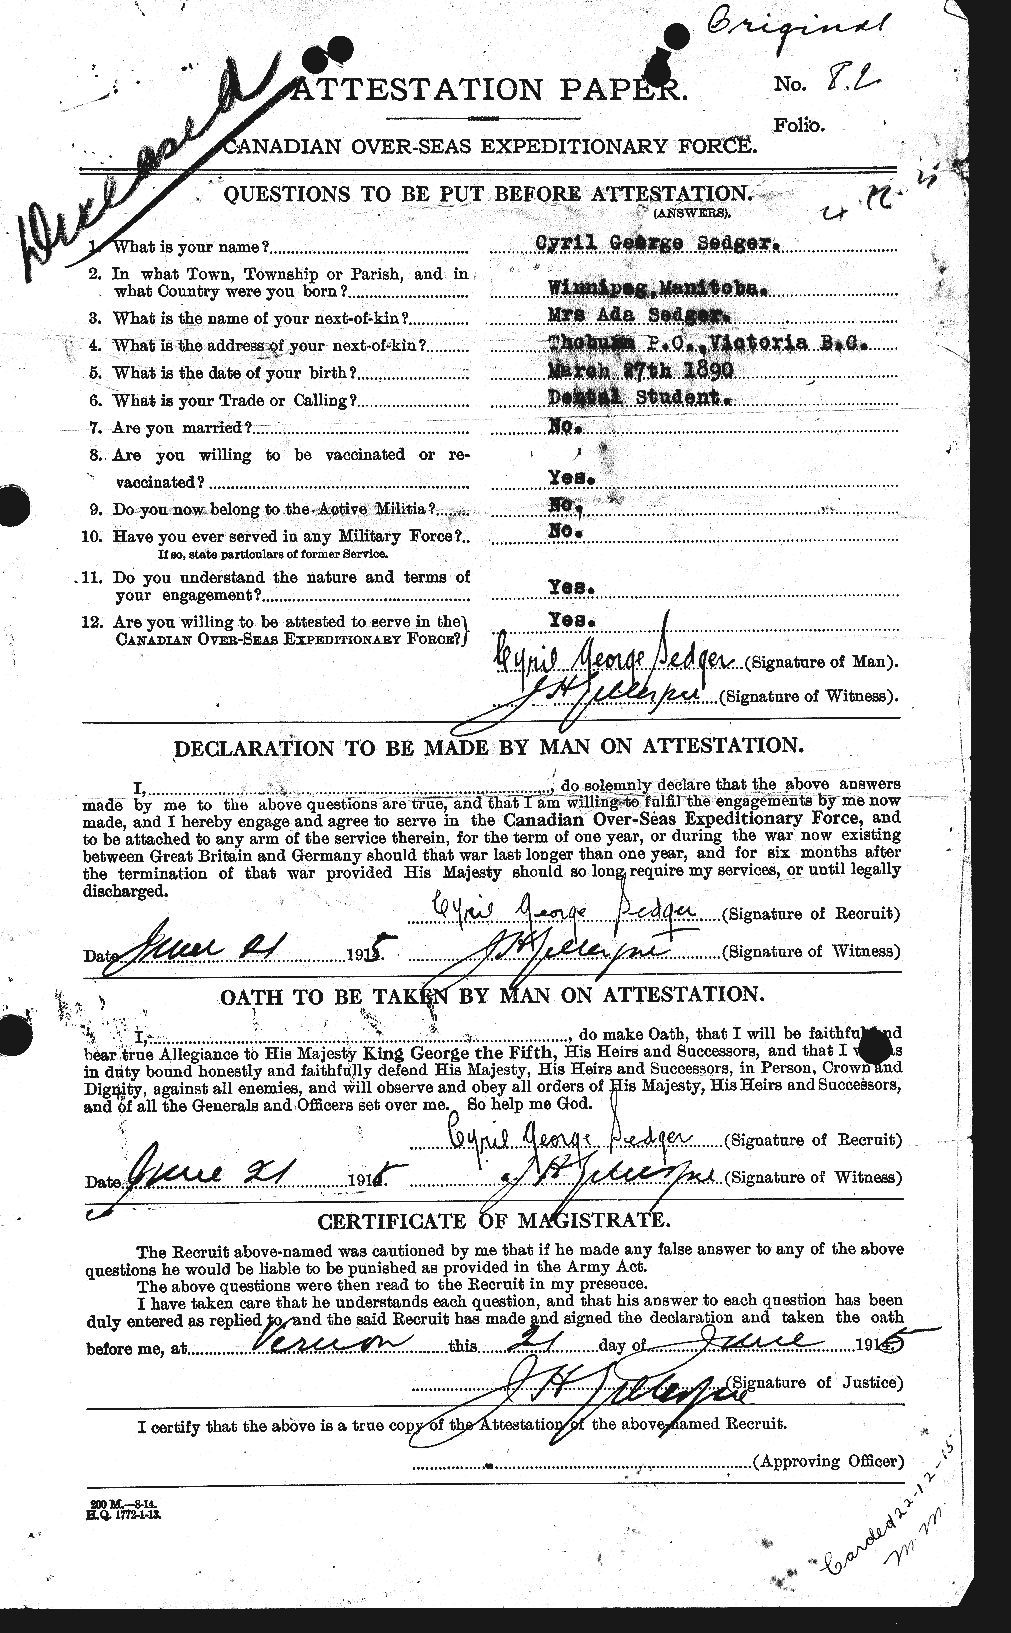 Dossiers du Personnel de la Première Guerre mondiale - CEC 085157a